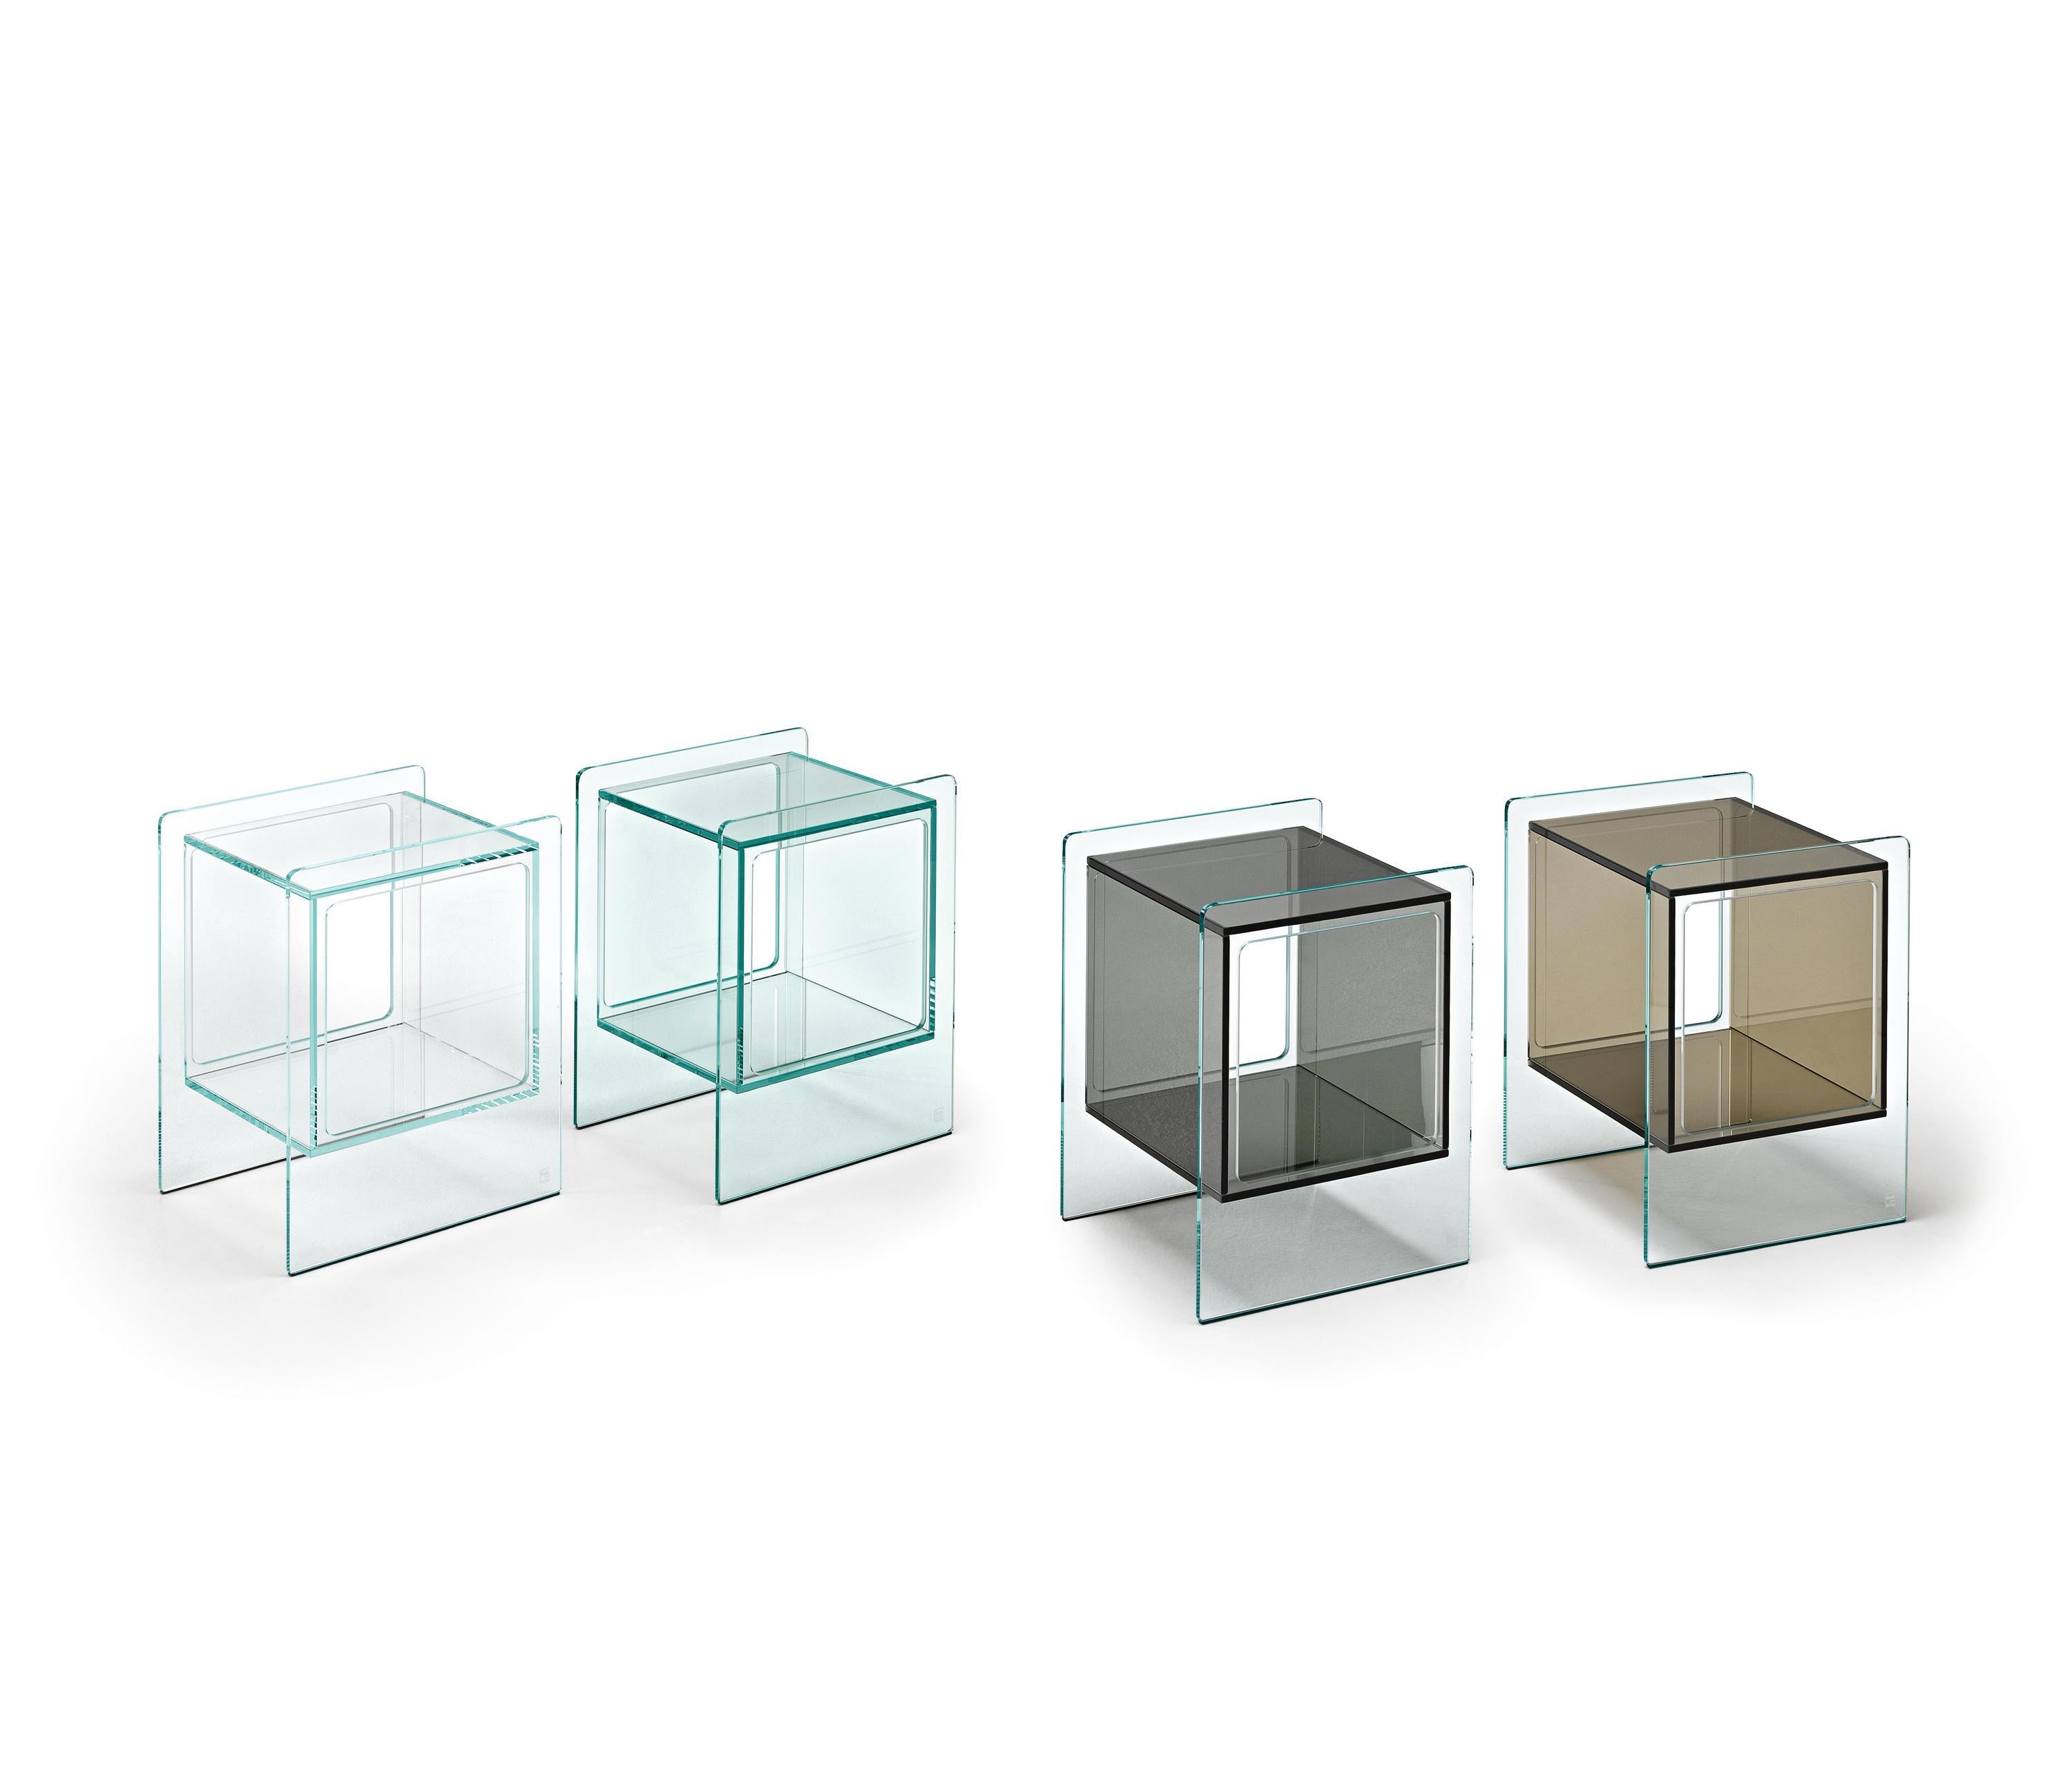 Table de chevet avec compartiment intérieur cubique en verre de 10 mm d'épaisseur. Disponible en différentes finitions. Structure en verre extralight, compartiment intérieur en verre bronze.
 